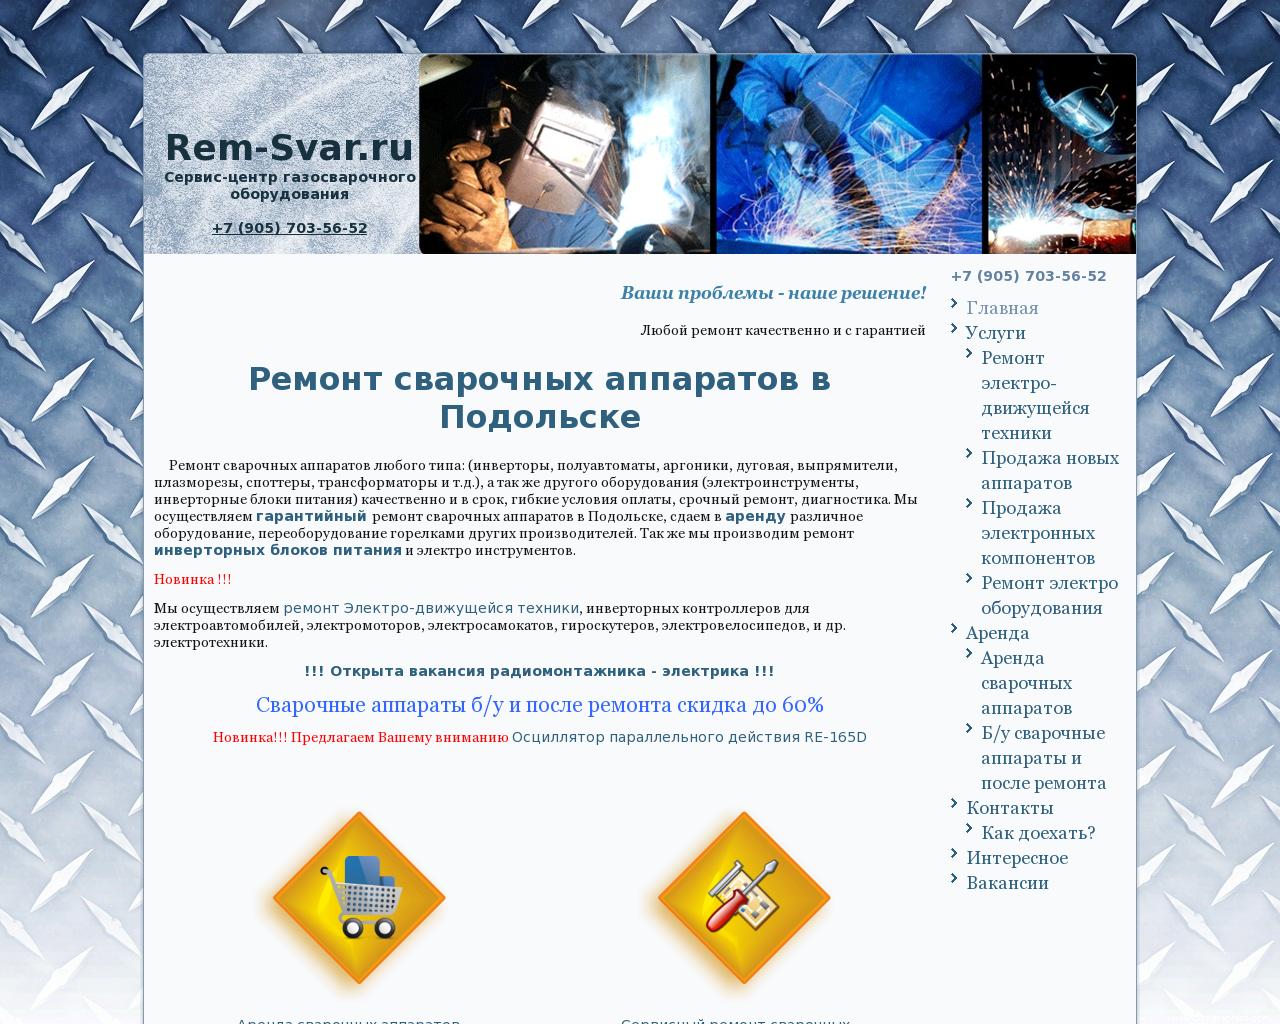 Изображение сайта rem-svar.ru в разрешении 1280x1024